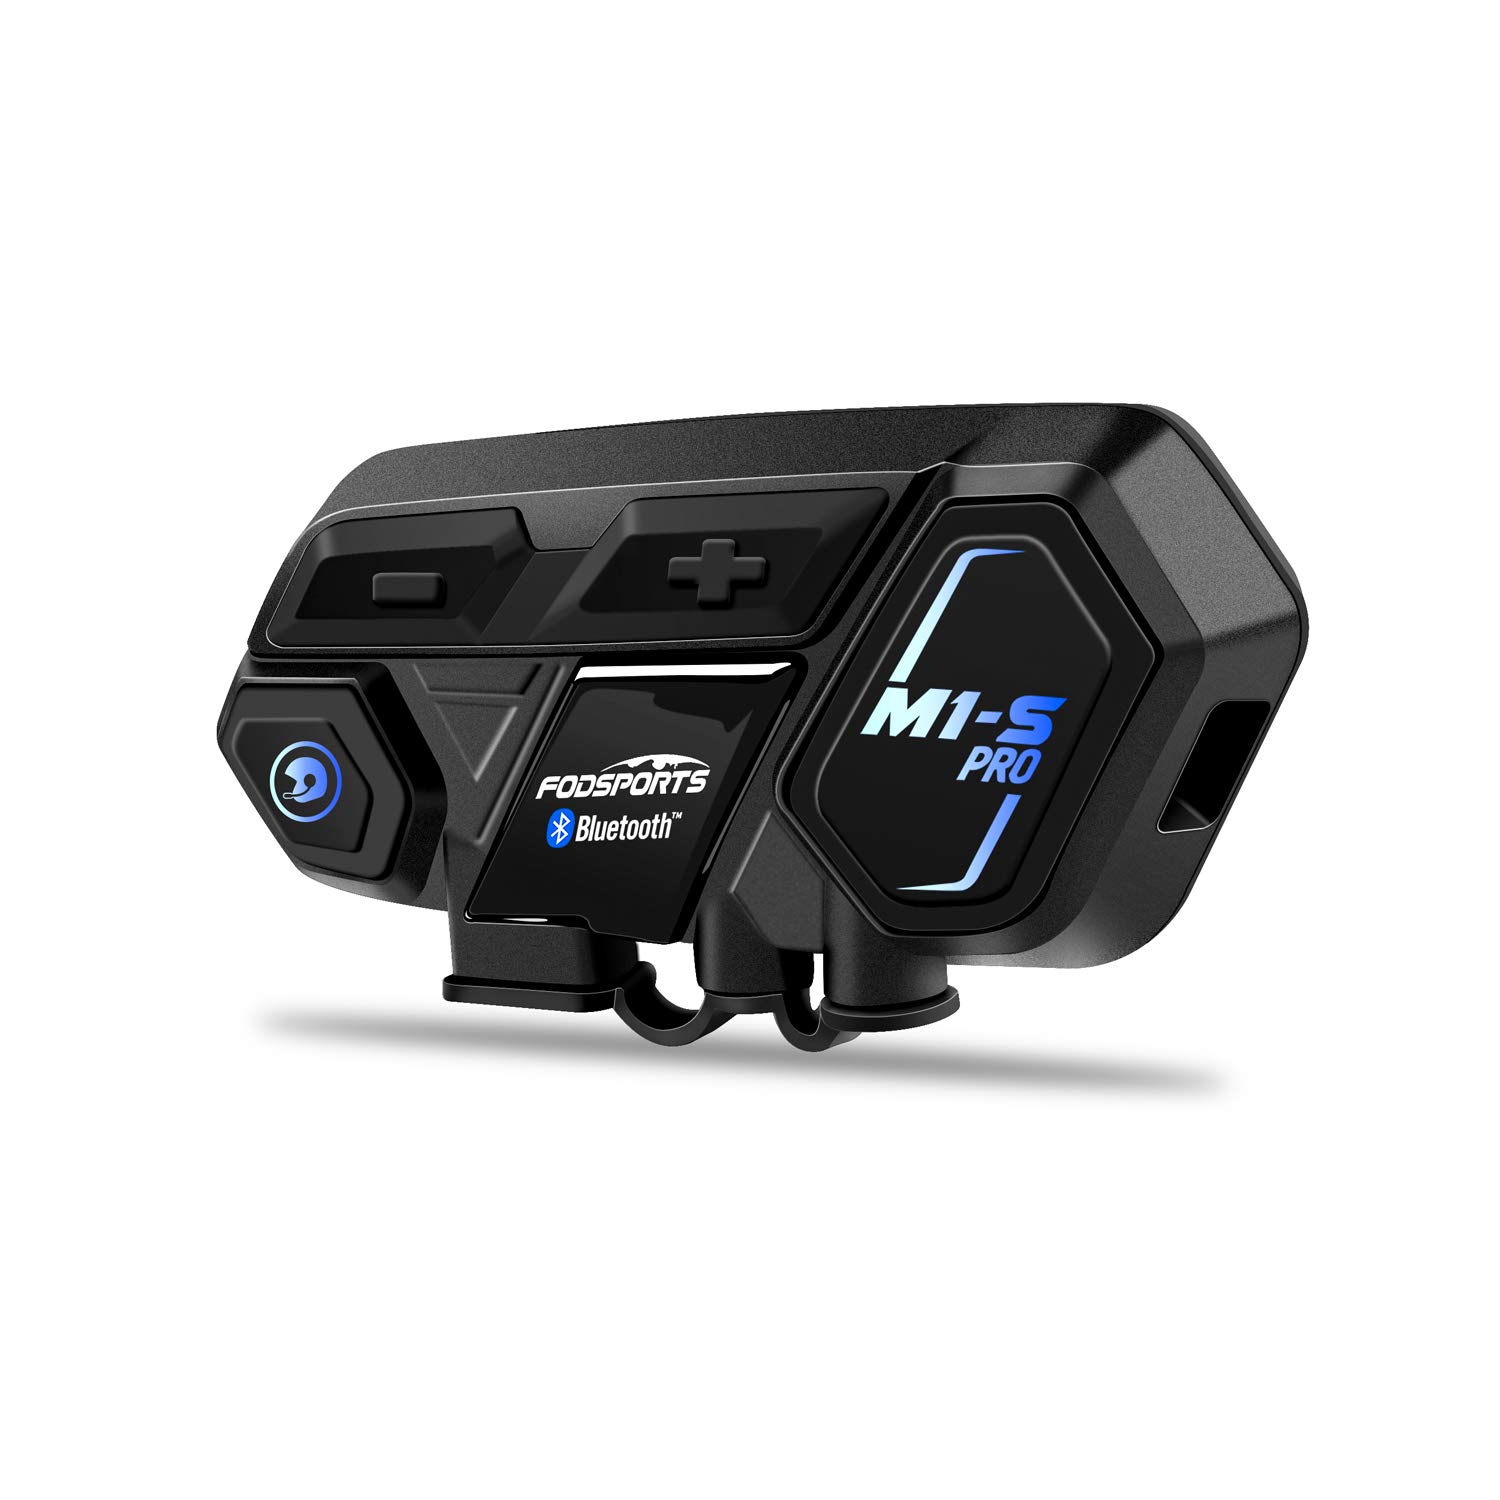 Fodsports Motorrad Bluetooth Headset mit Musik Teilen, M1S PRO 2000m 8 Motorräder Helm Intercom Kommunikationssystem, Universell Motorradhelm Gegensprechanlage mit Audio Multitasking, Einzelpack